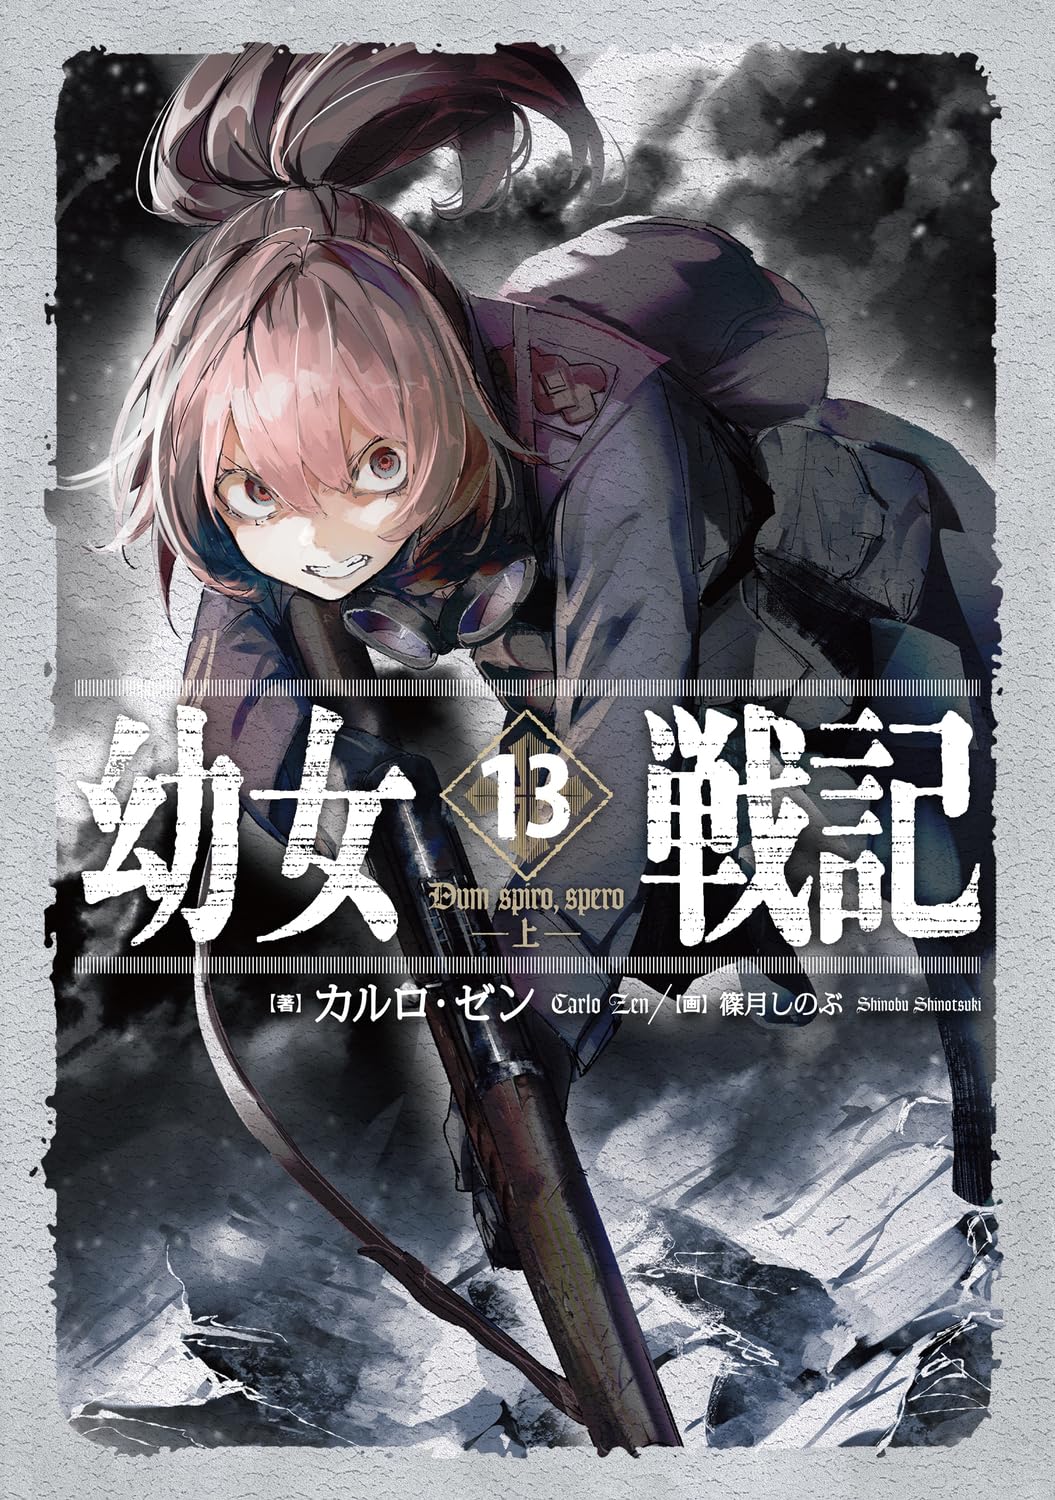 TOP vendas light novel no Japão – 2 a 8 de Agosto de 2021